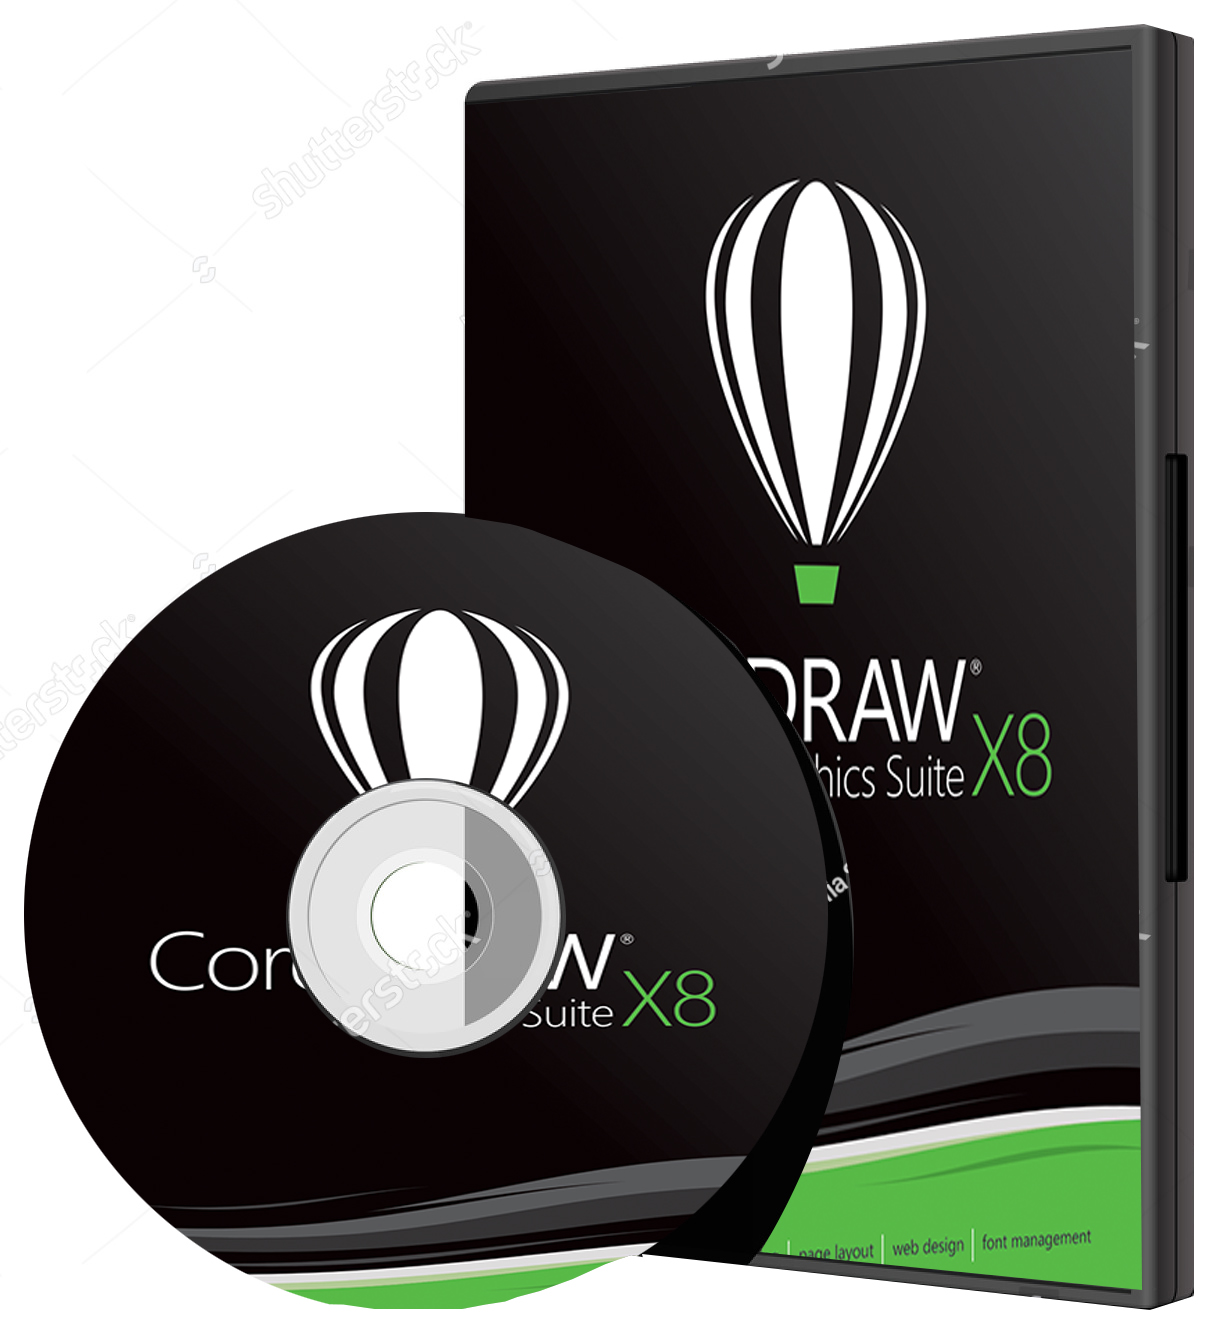 coreldraw x8 32 bit free download